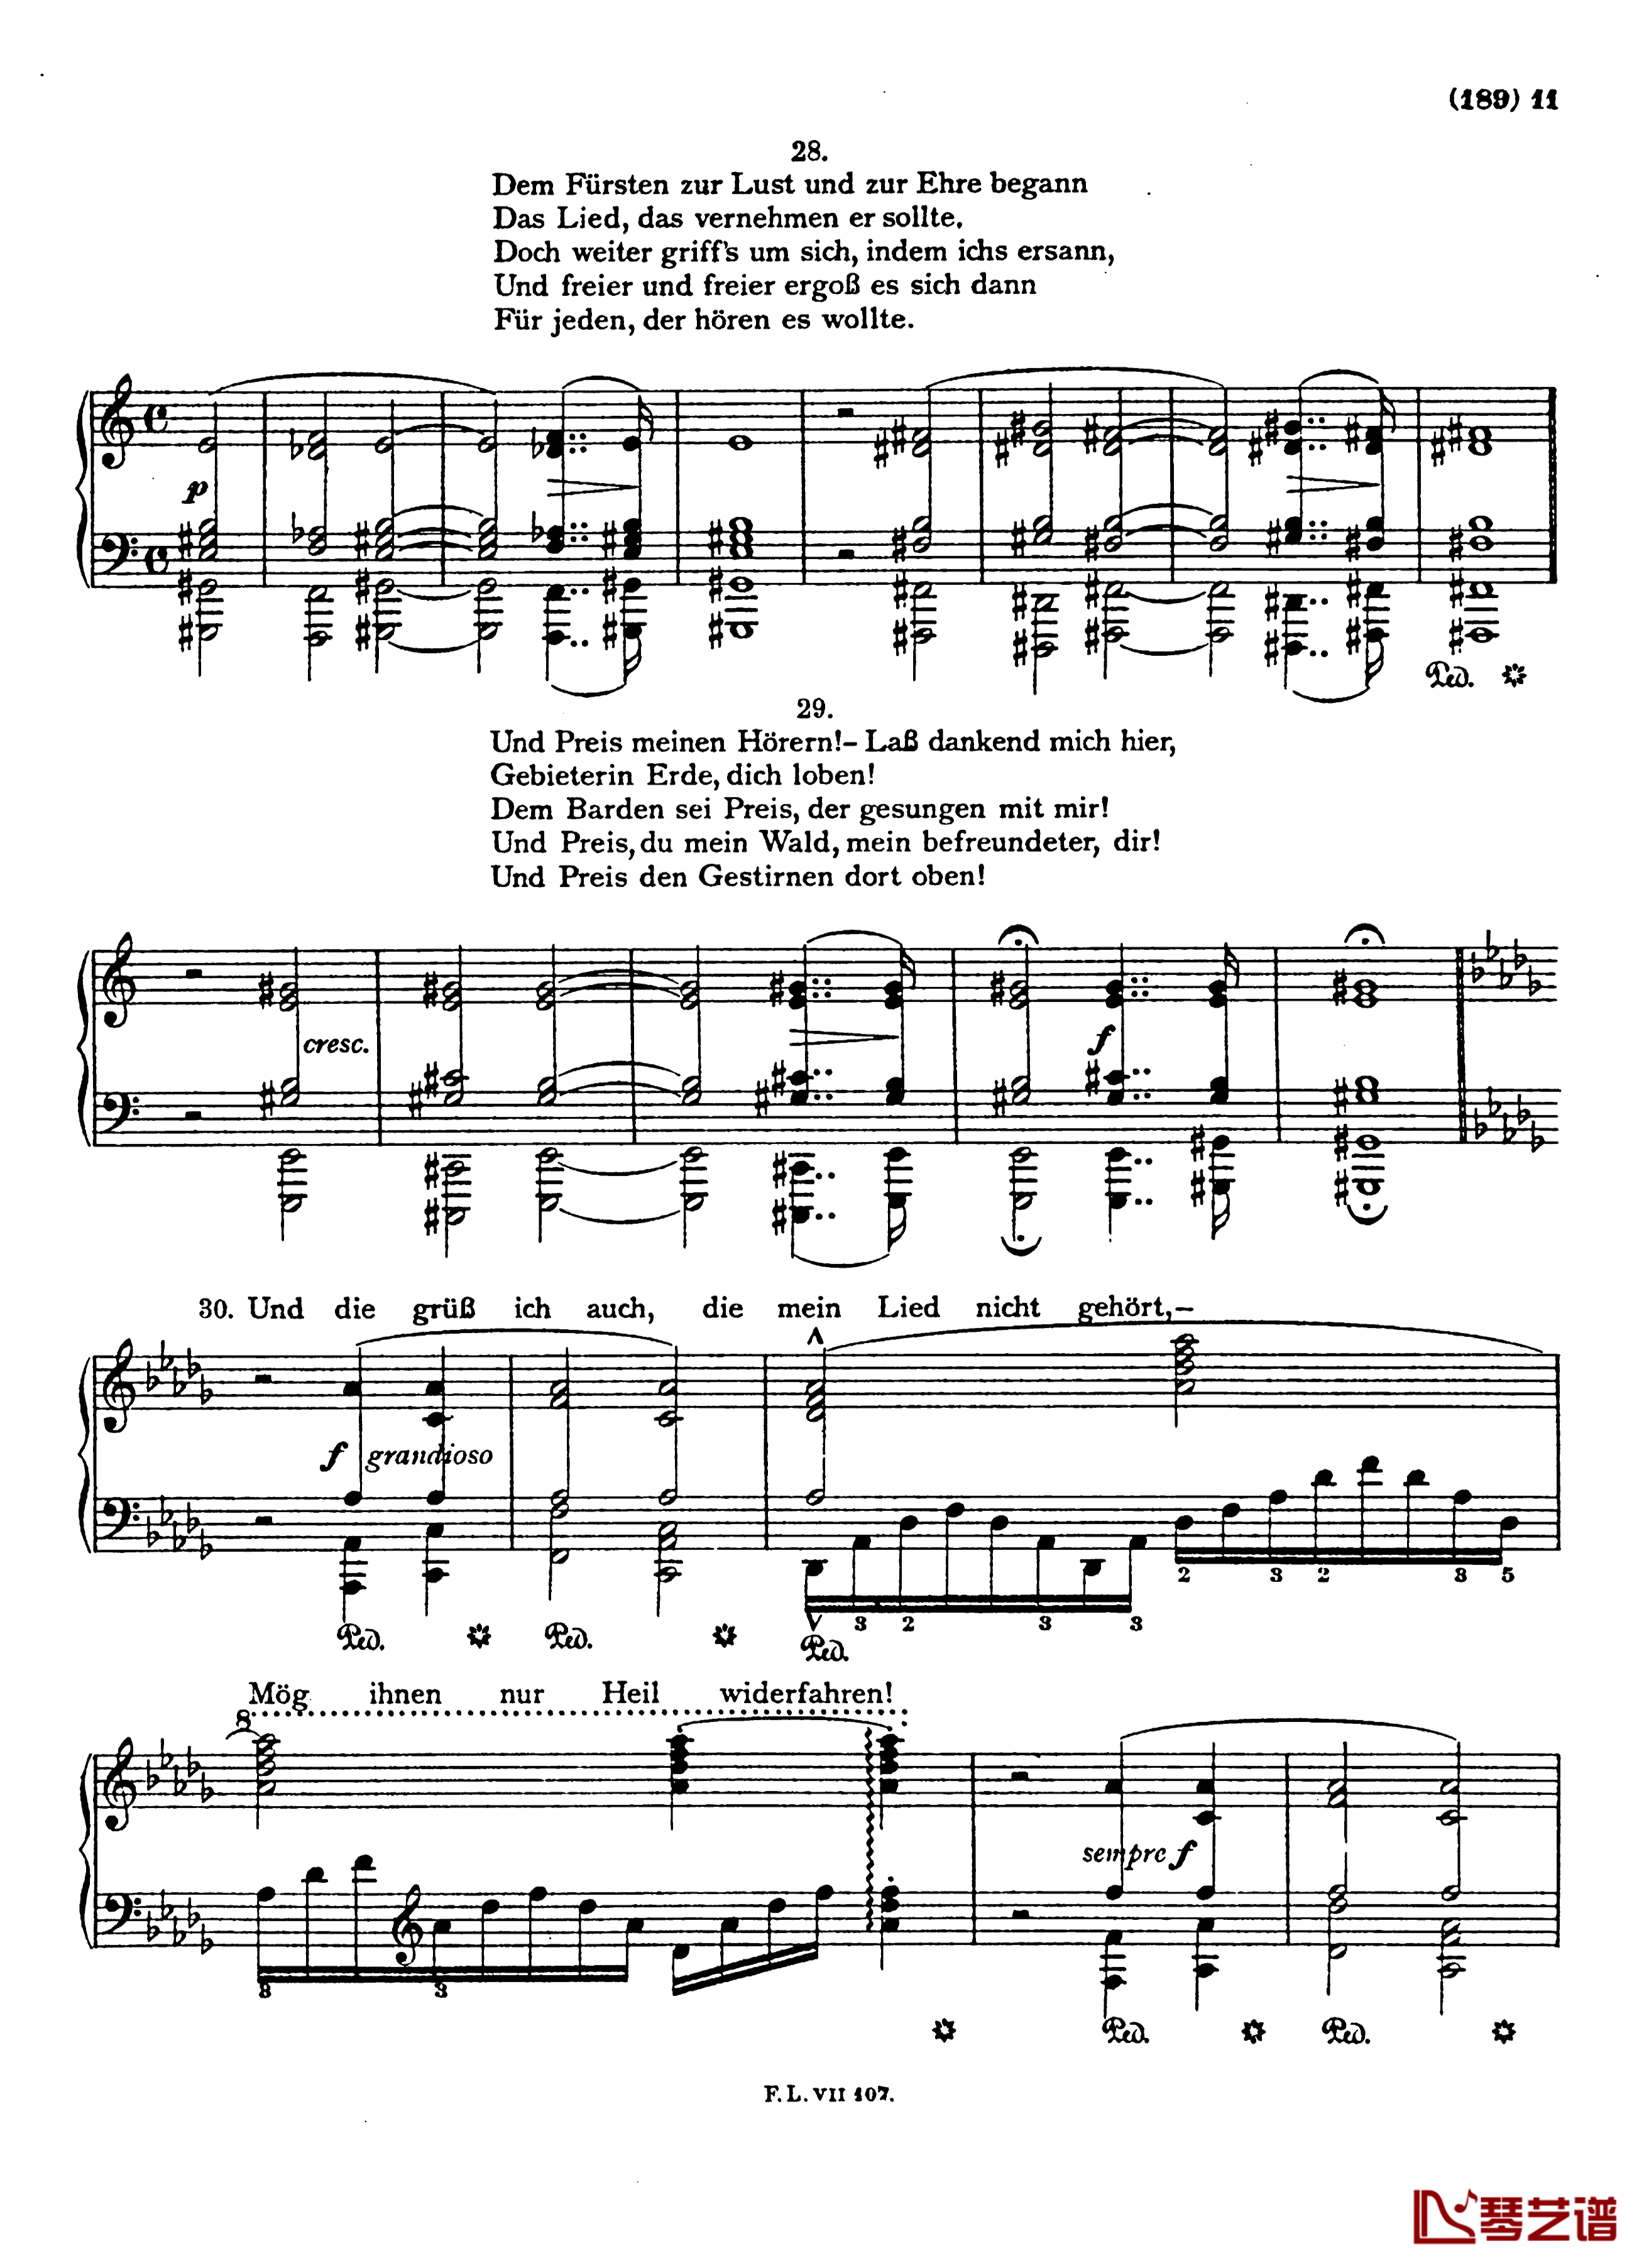  盲人歌手S.350钢琴谱-配乐诗朗诵-李斯特11